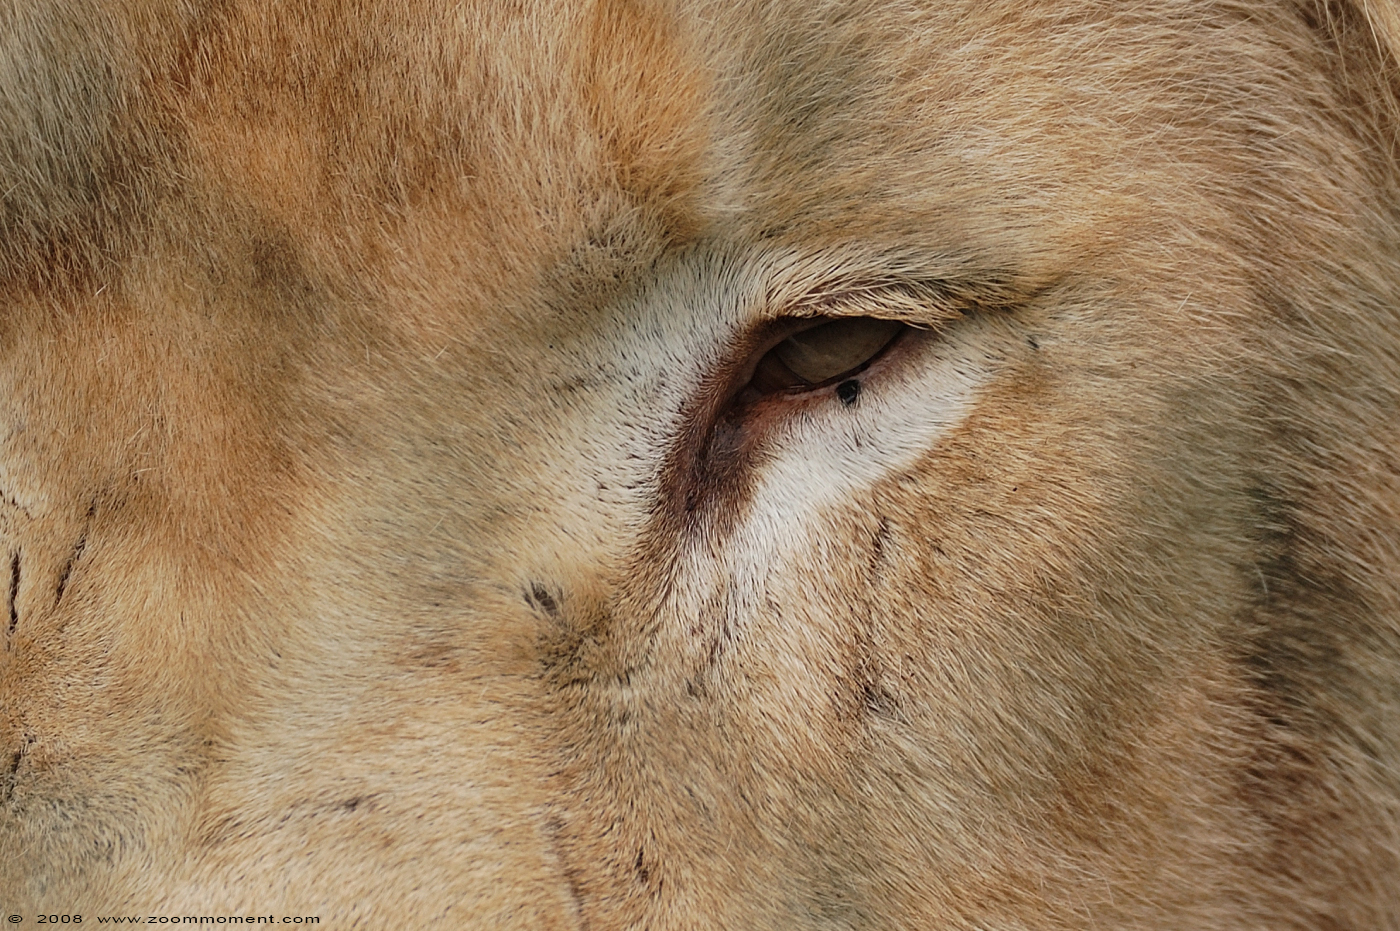 witte leeuw  ( Panthera leo )  white lion
Apollo
Trefwoorden: Olmen zoo Belgium witte leeuw Panthera leo white lion Apollo